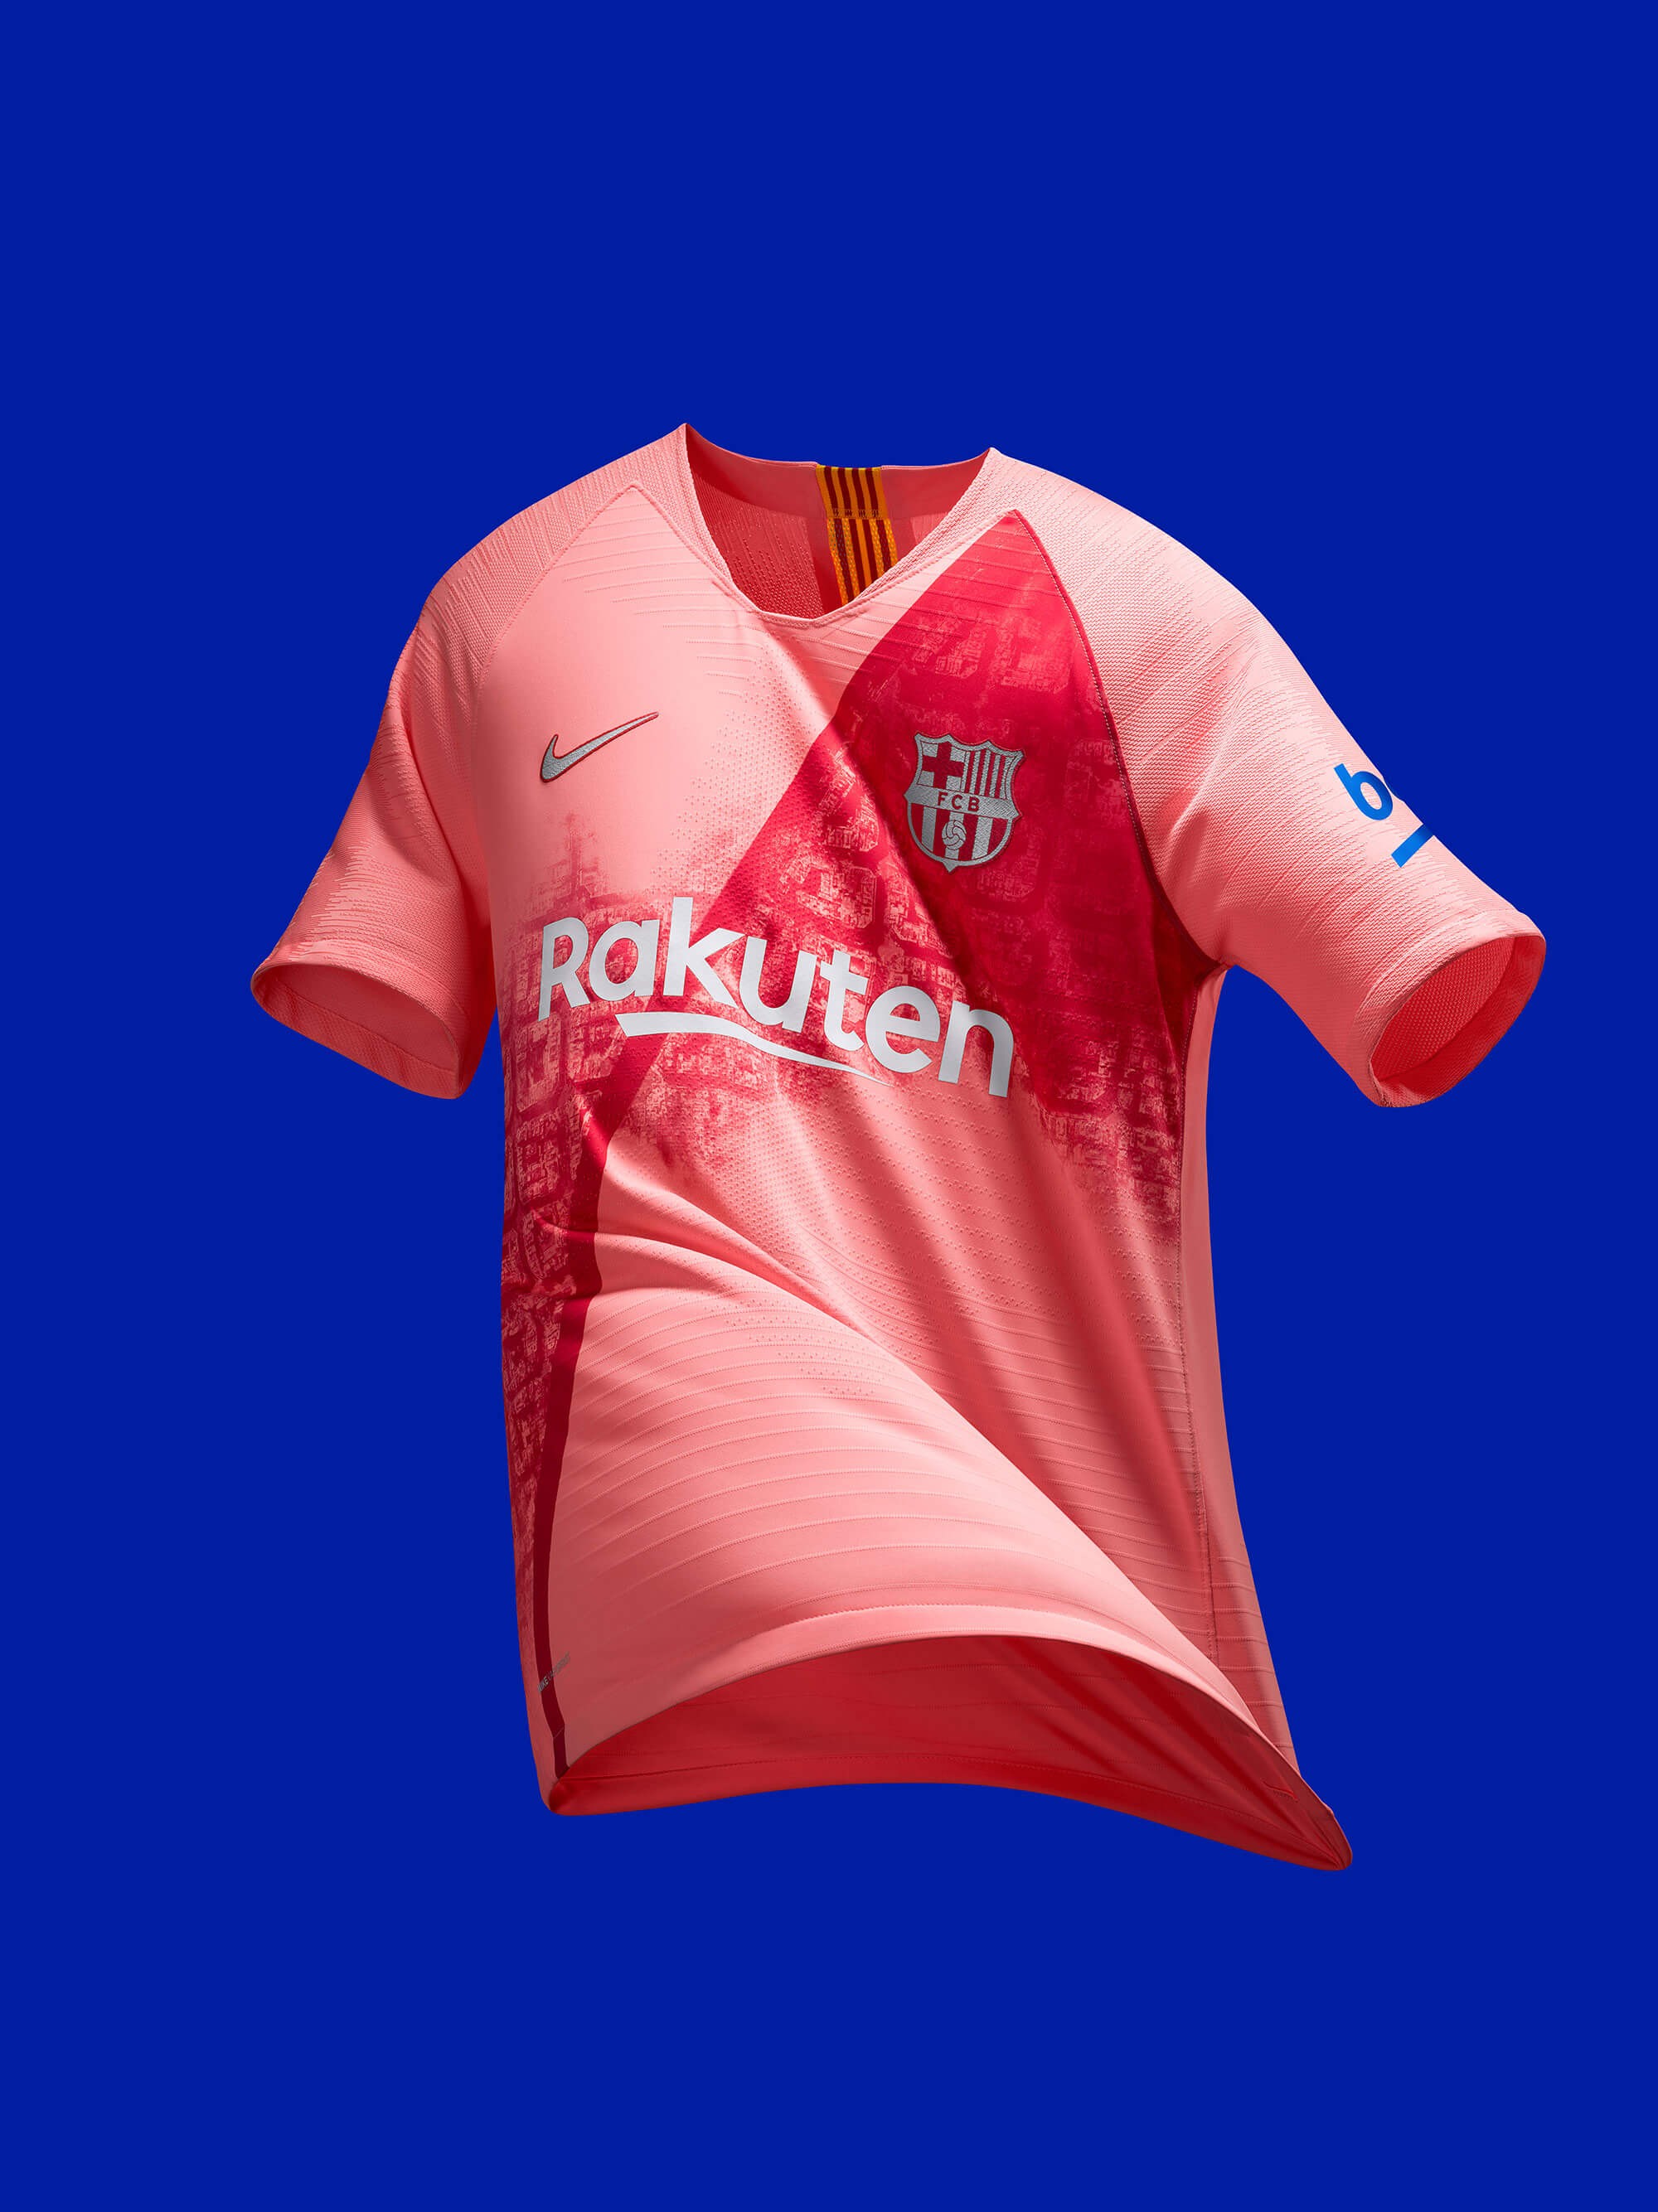 粉色城市!巴塞罗那2018\/19赛季第三球衣发布!